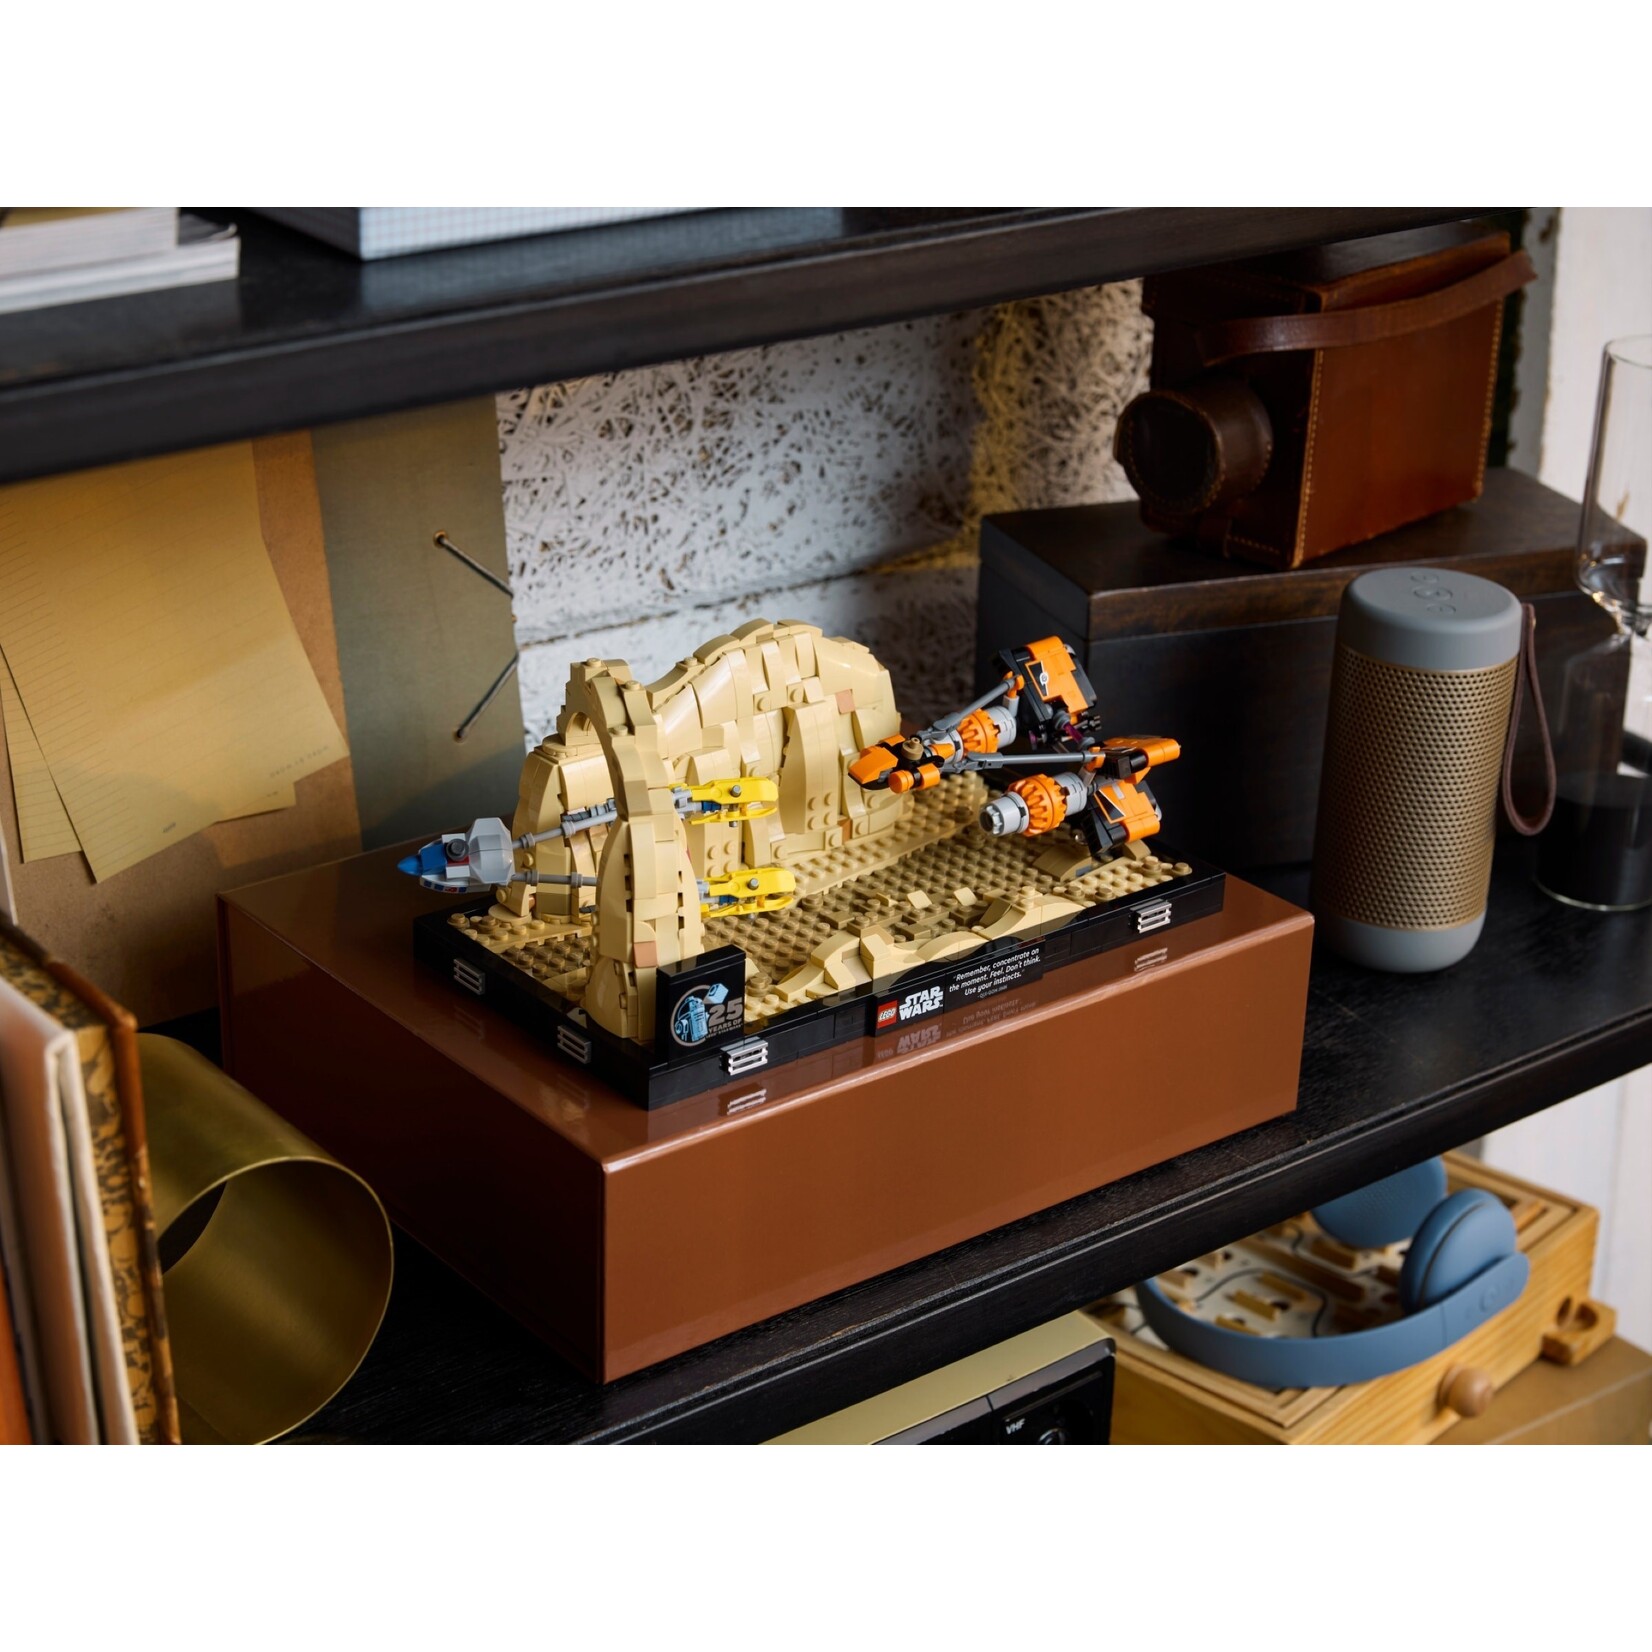 LEGO Mos Espa Podrace™ diorama - 75380